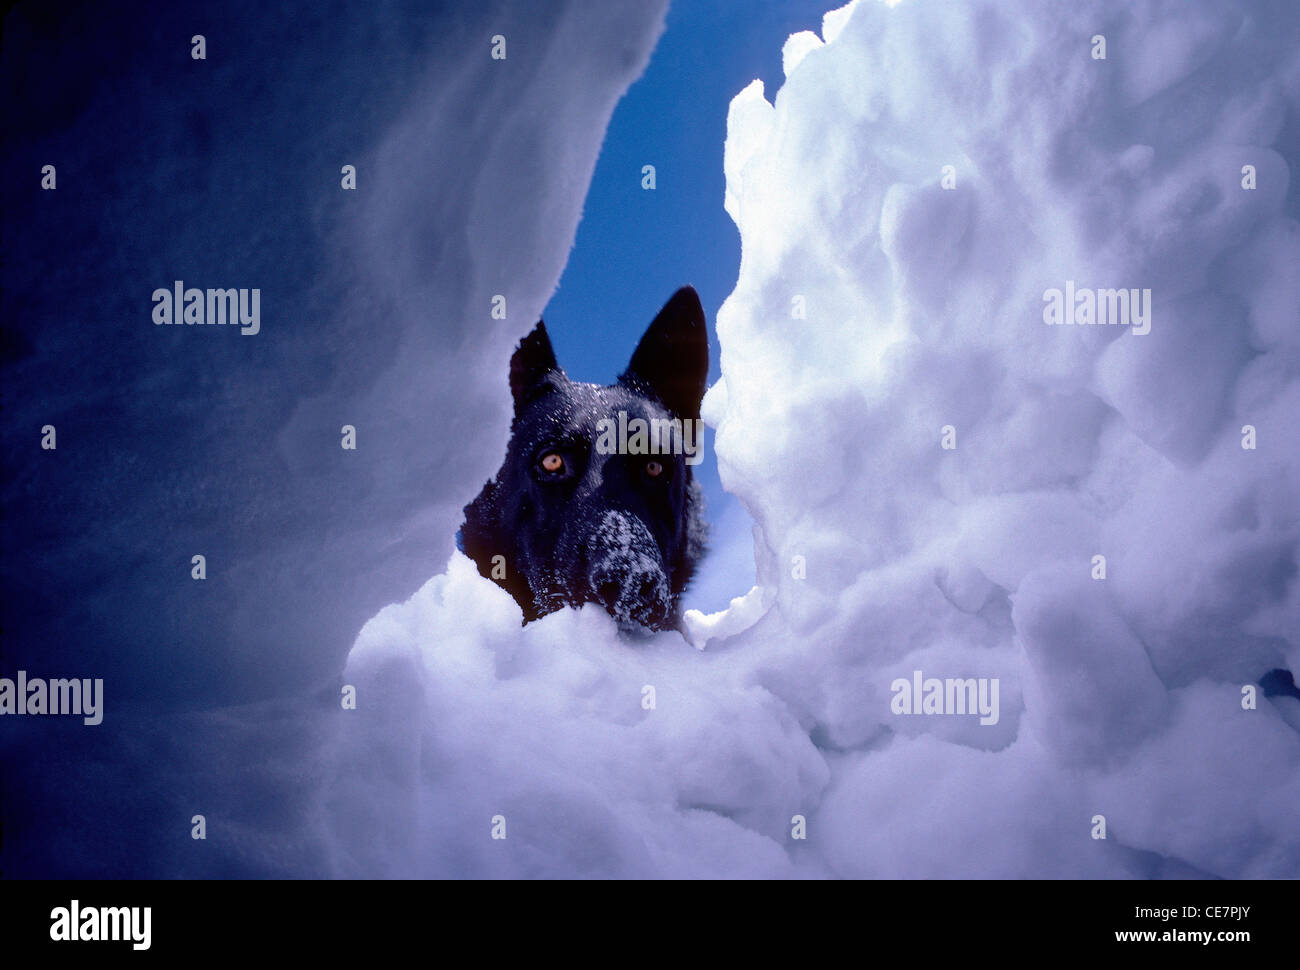 Sotto la neve vista di ricerca e salvataggio, cane da sciatore sepolto, vittima di valanghe, in attesa di salvataggio sotto la neve. Foto Stock